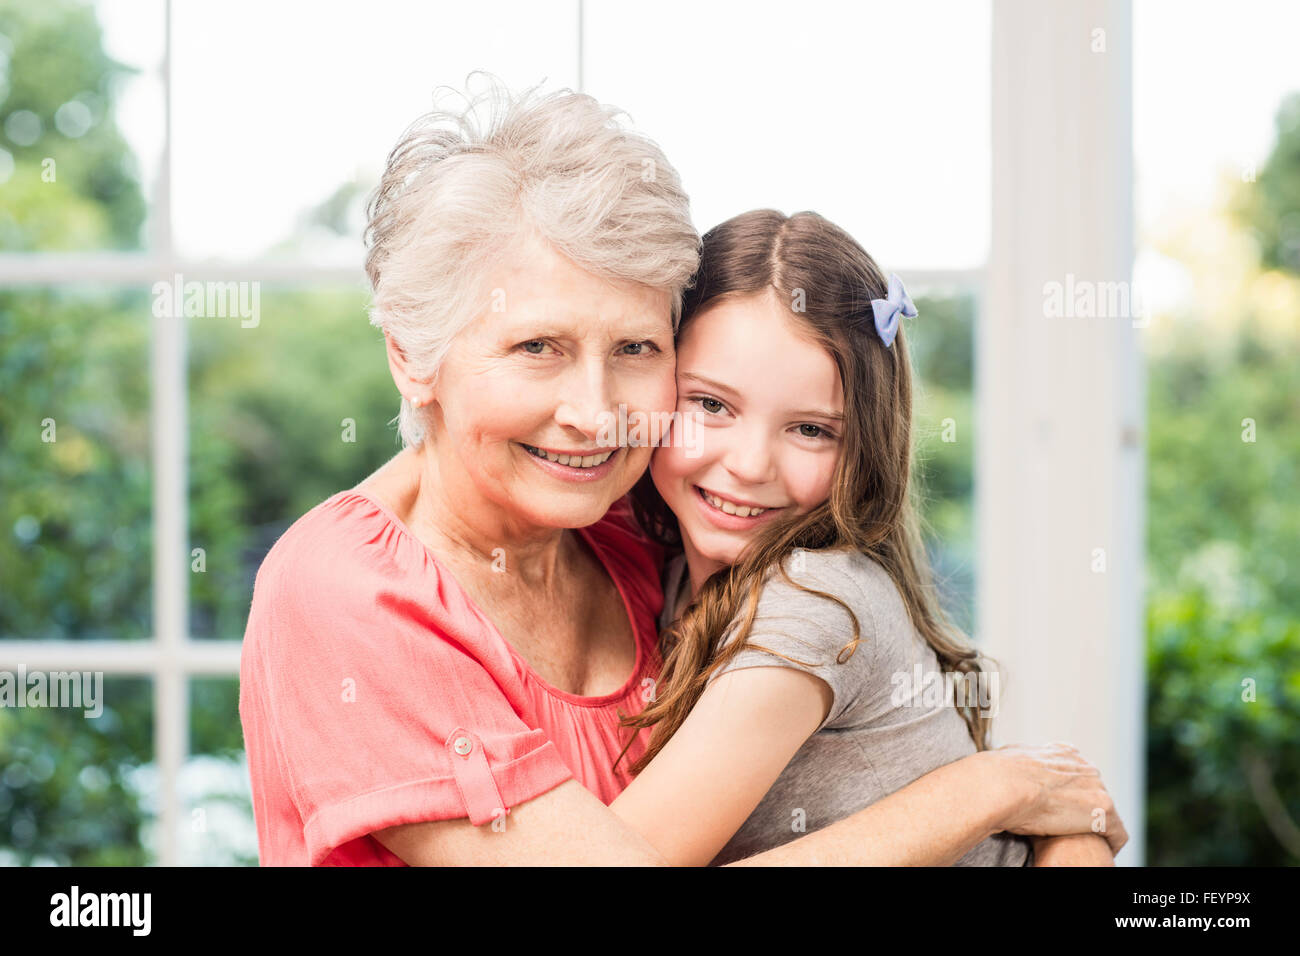 Grand-mère et petite-fille embracing Banque D'Images